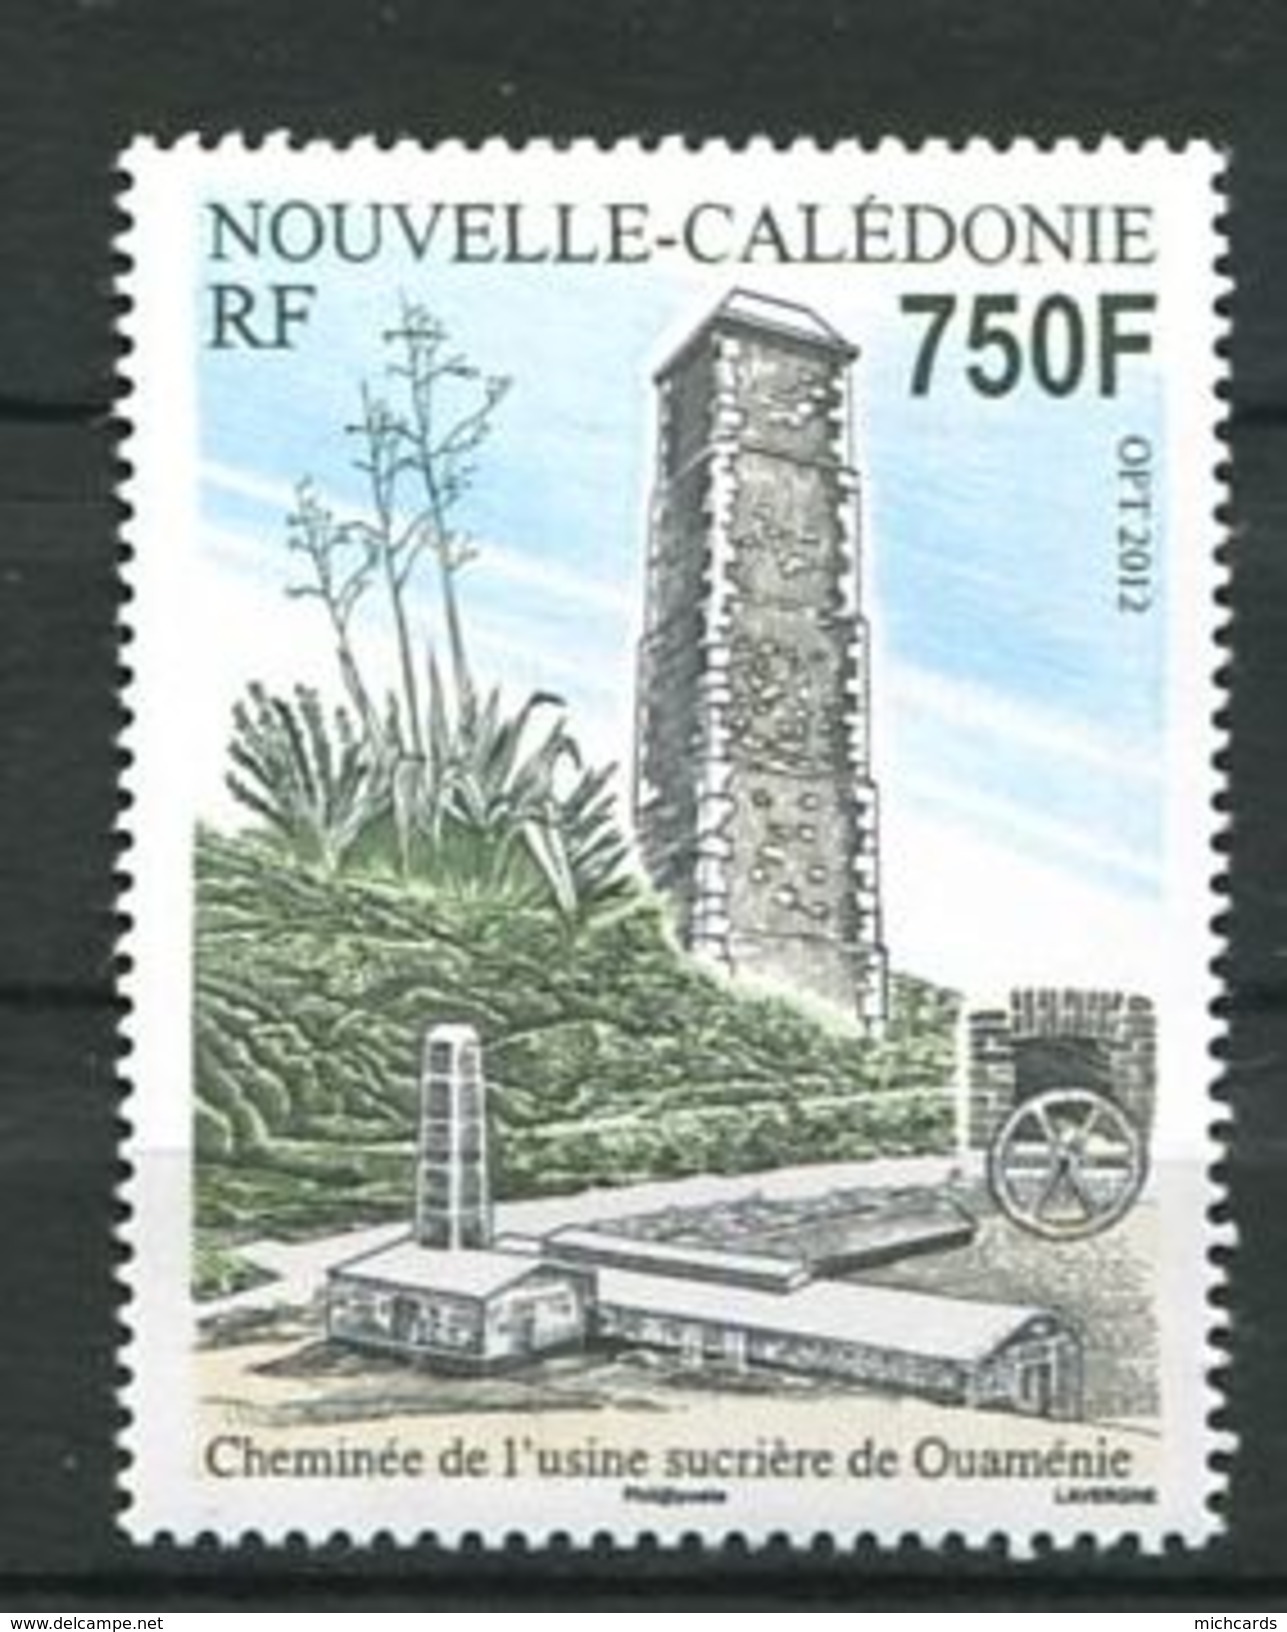 212 NOUVELLE CALEDONIE 2012 - Yvert 1146 - Usine Sucriere Ouamenie - Neuf ** (MNH) Sans Trace De Charniere - Neufs